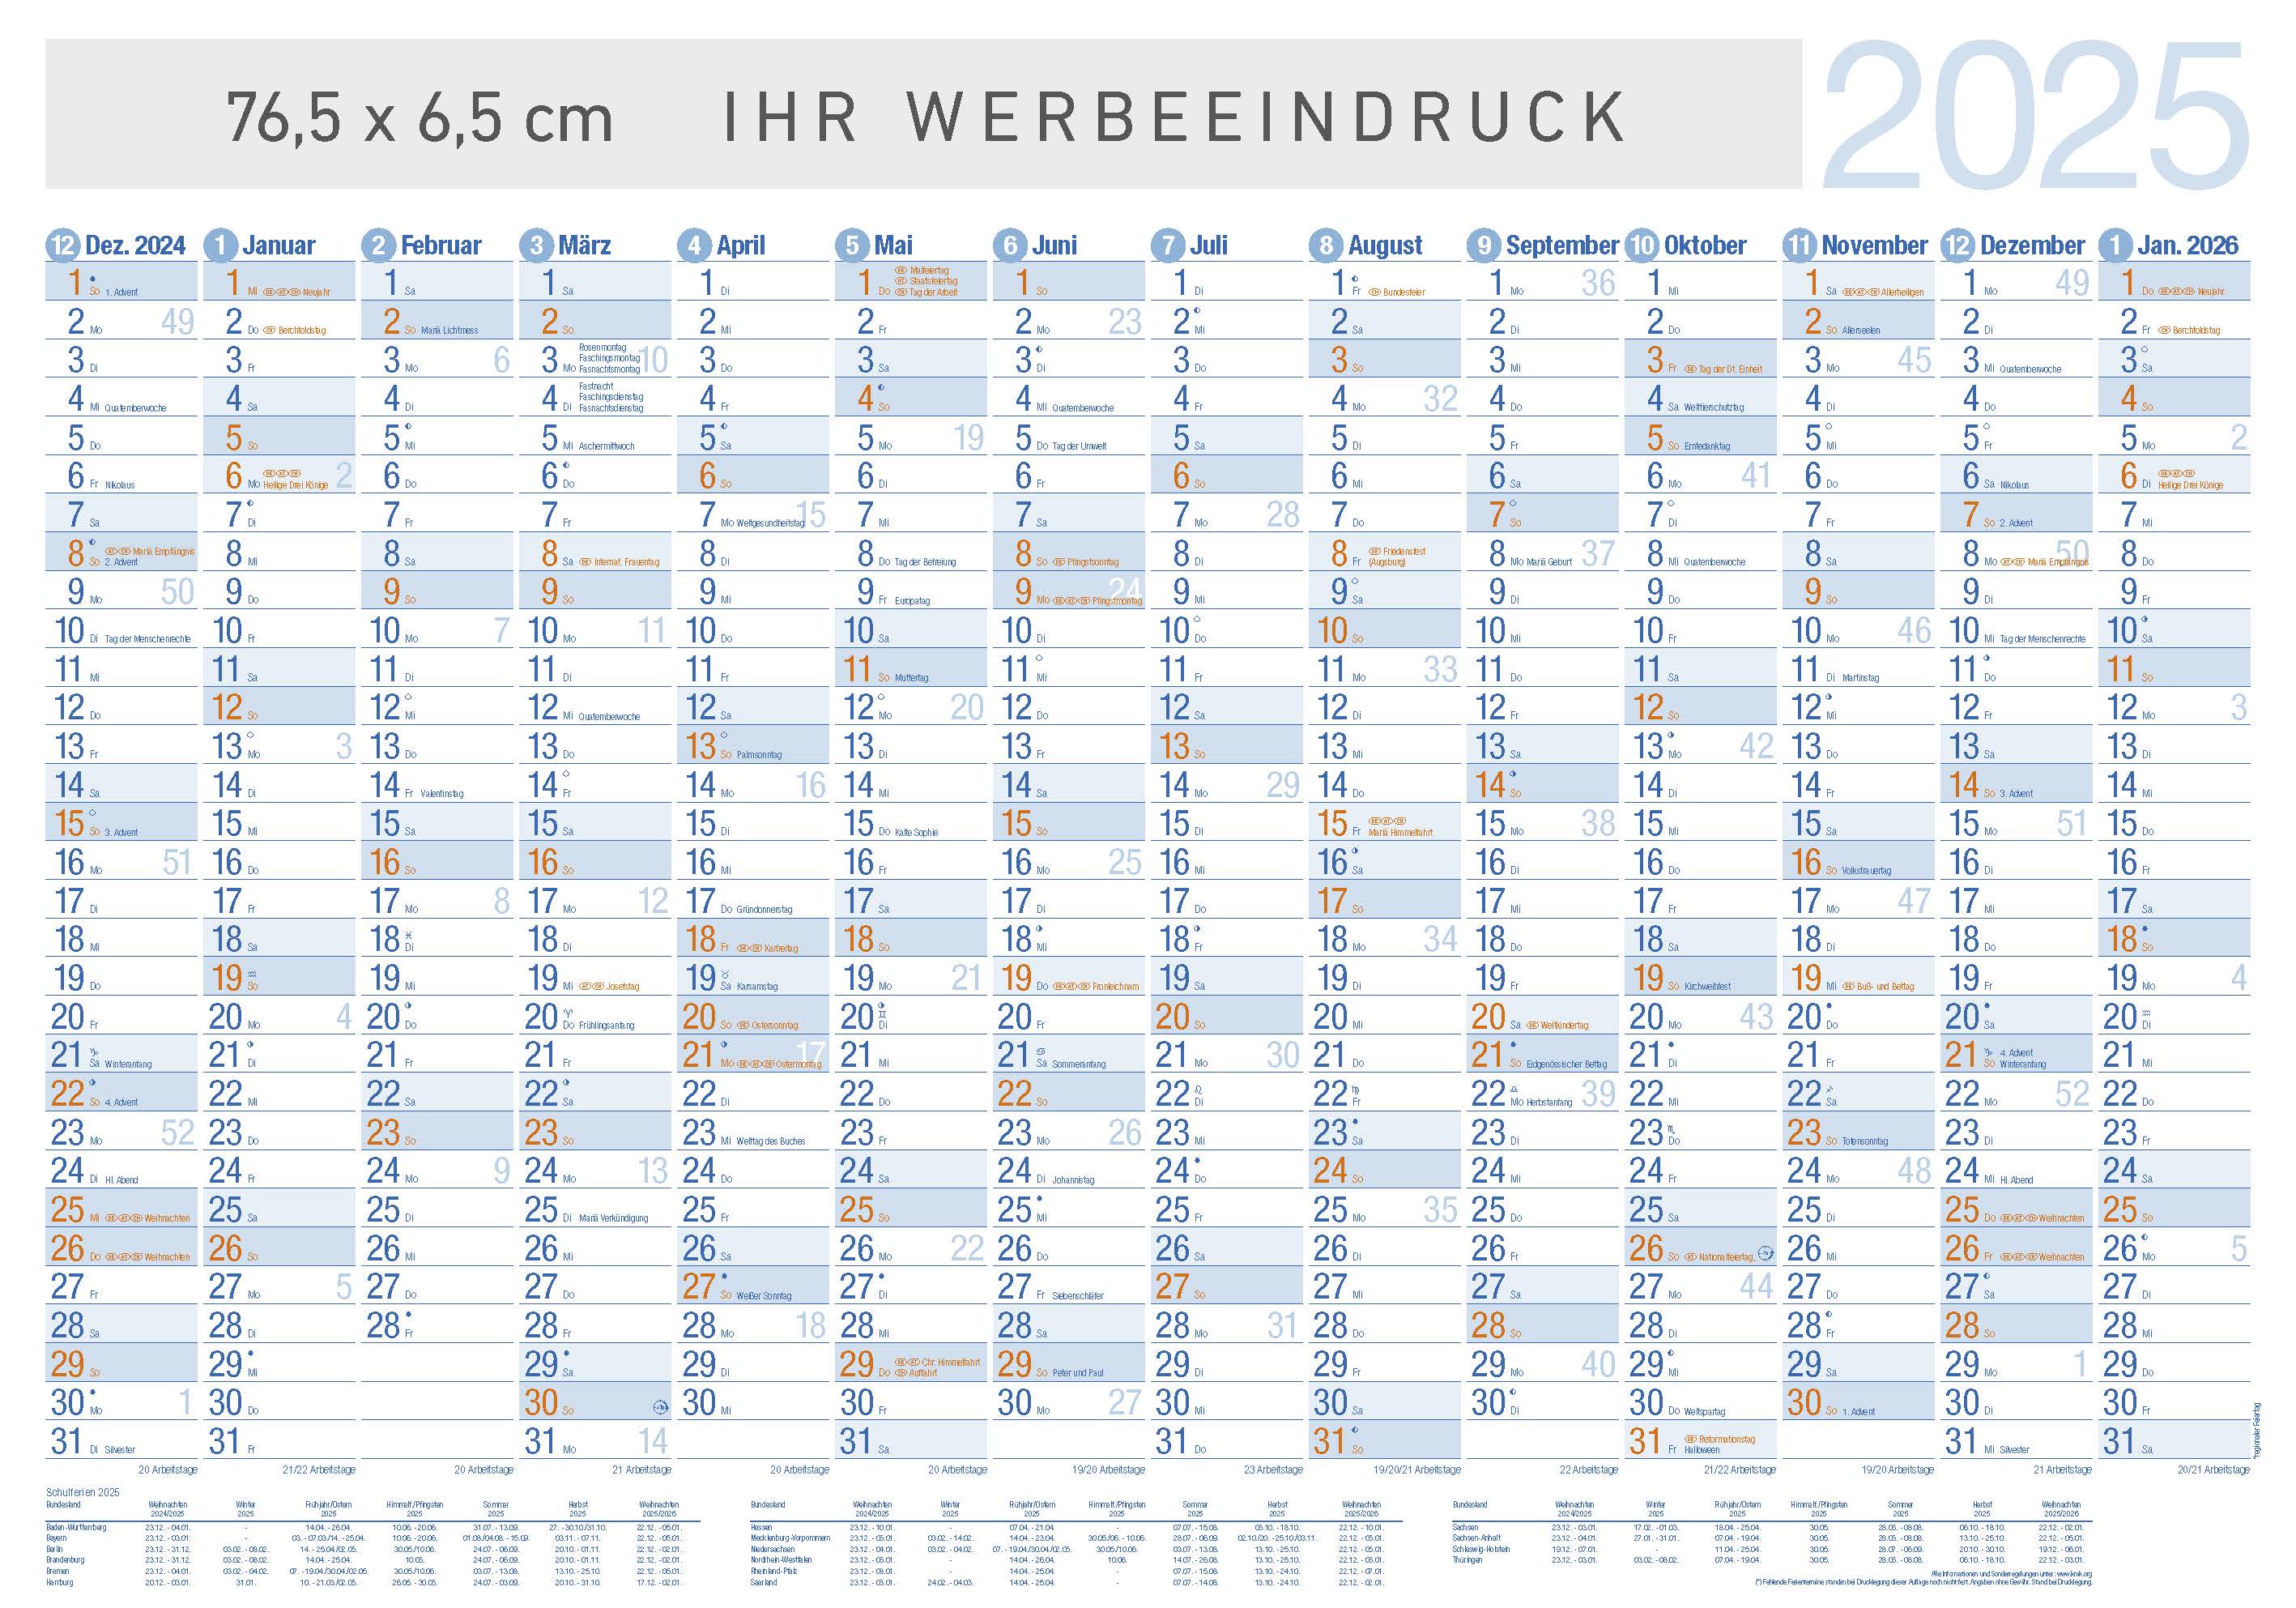 Jahresplaner Bodensee XL
14 Monate blau/orange
Deutsch - 3-sprachig DE-AT-CH